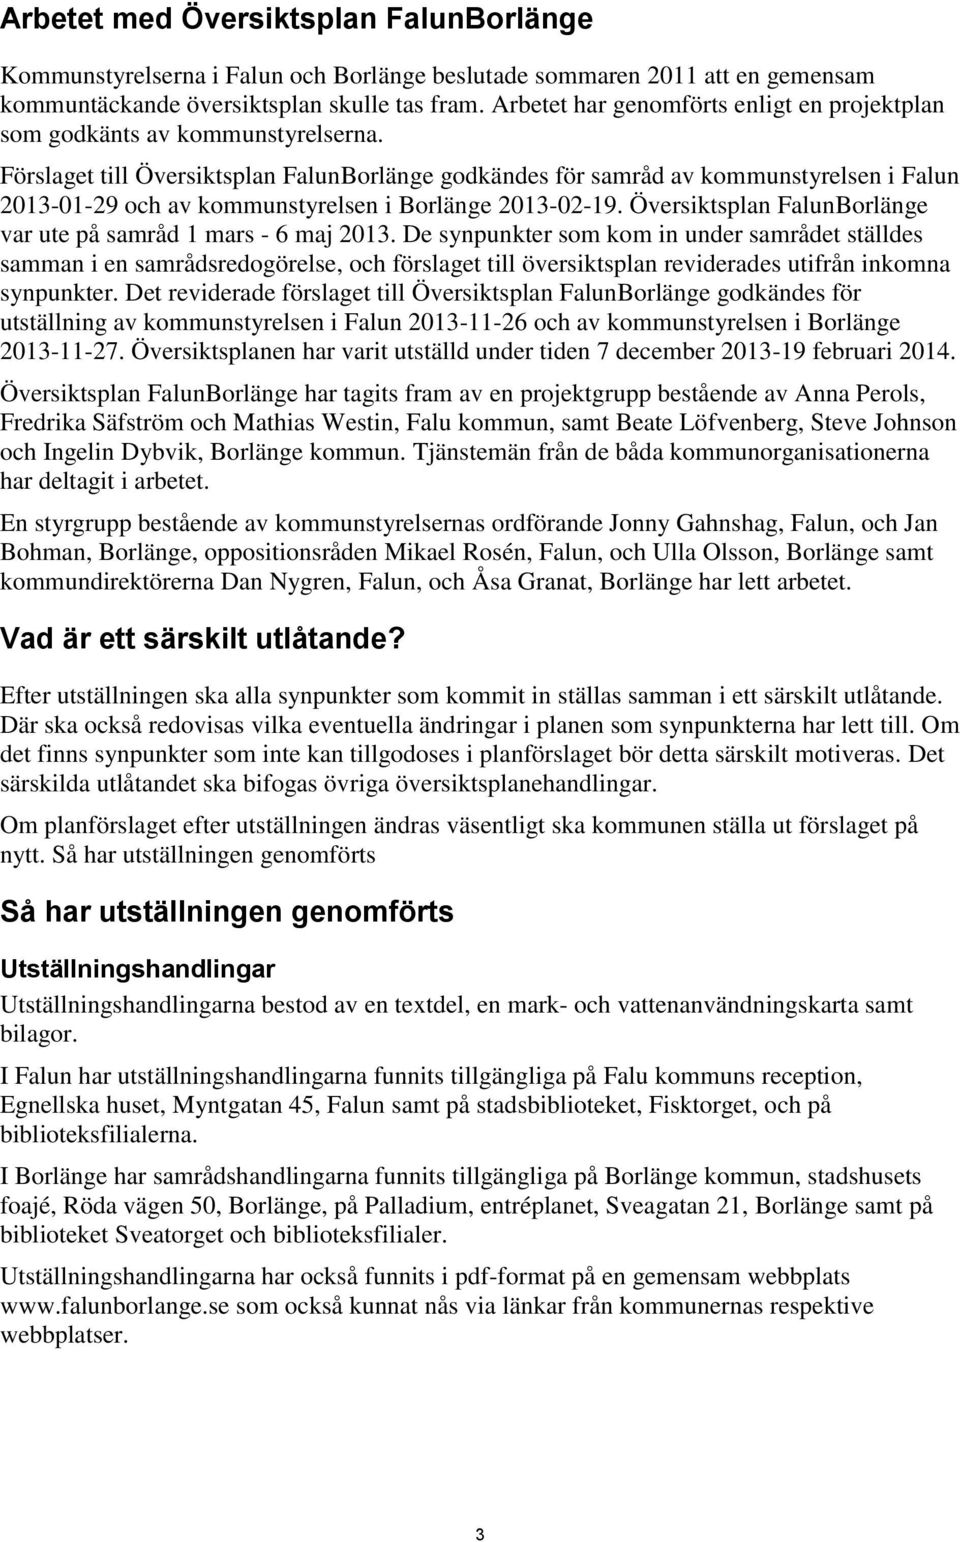 Förslaget till Översiktsplan FalunBorlänge godkändes för samråd av kommunstyrelsen i Falun 2013-01-29 och av kommunstyrelsen i Borlänge 2013-02-19.